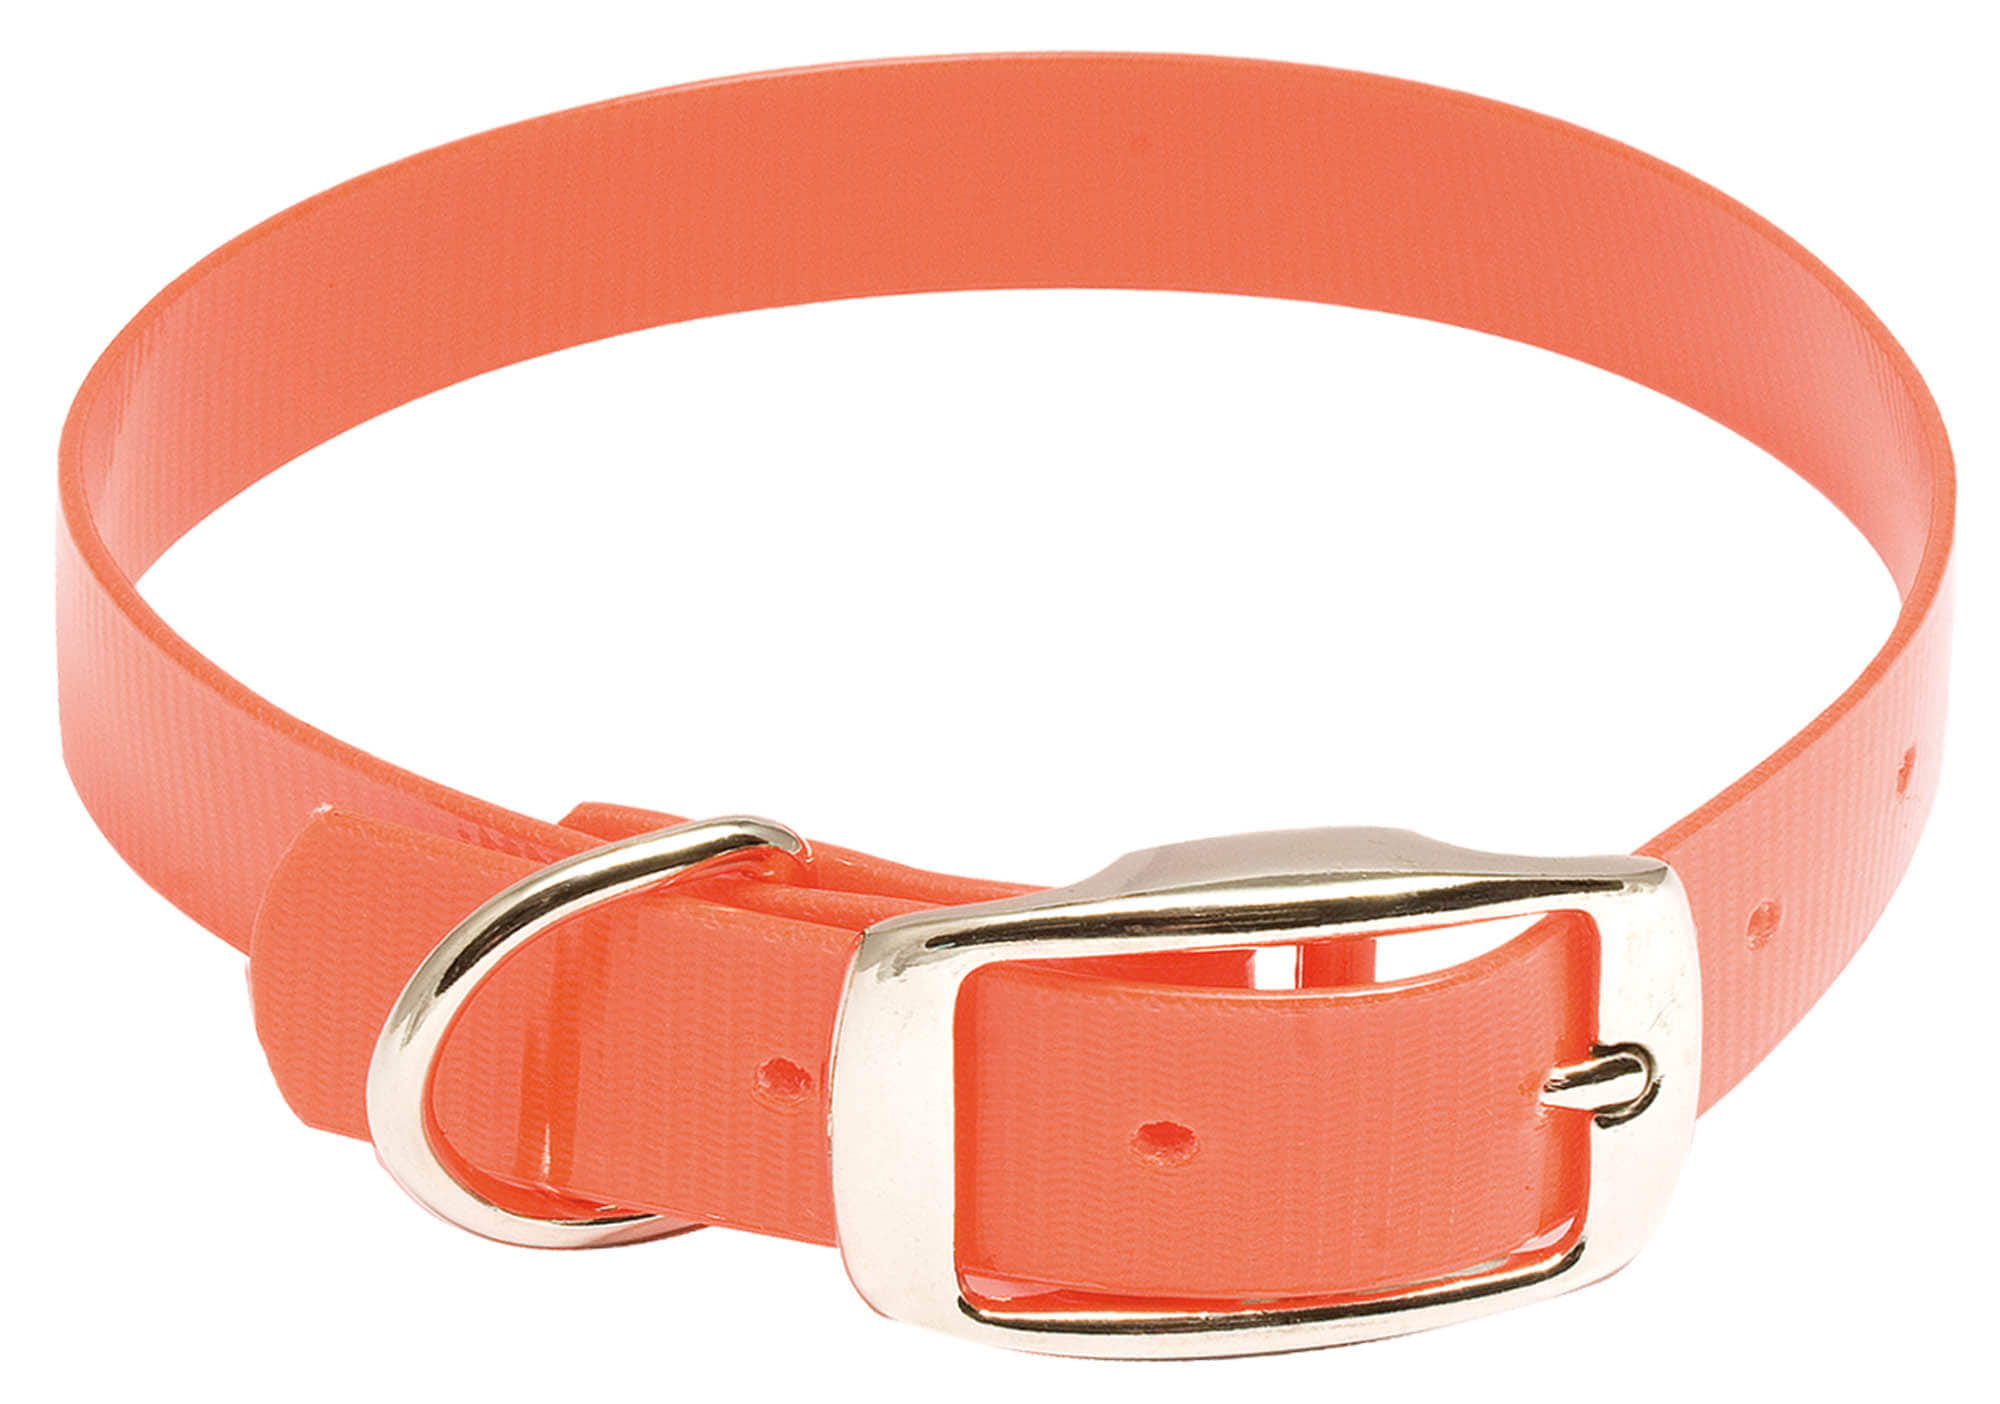 Collier pour chien Hiflex orange fluo - Country - Collier Hiflex - 35 cm